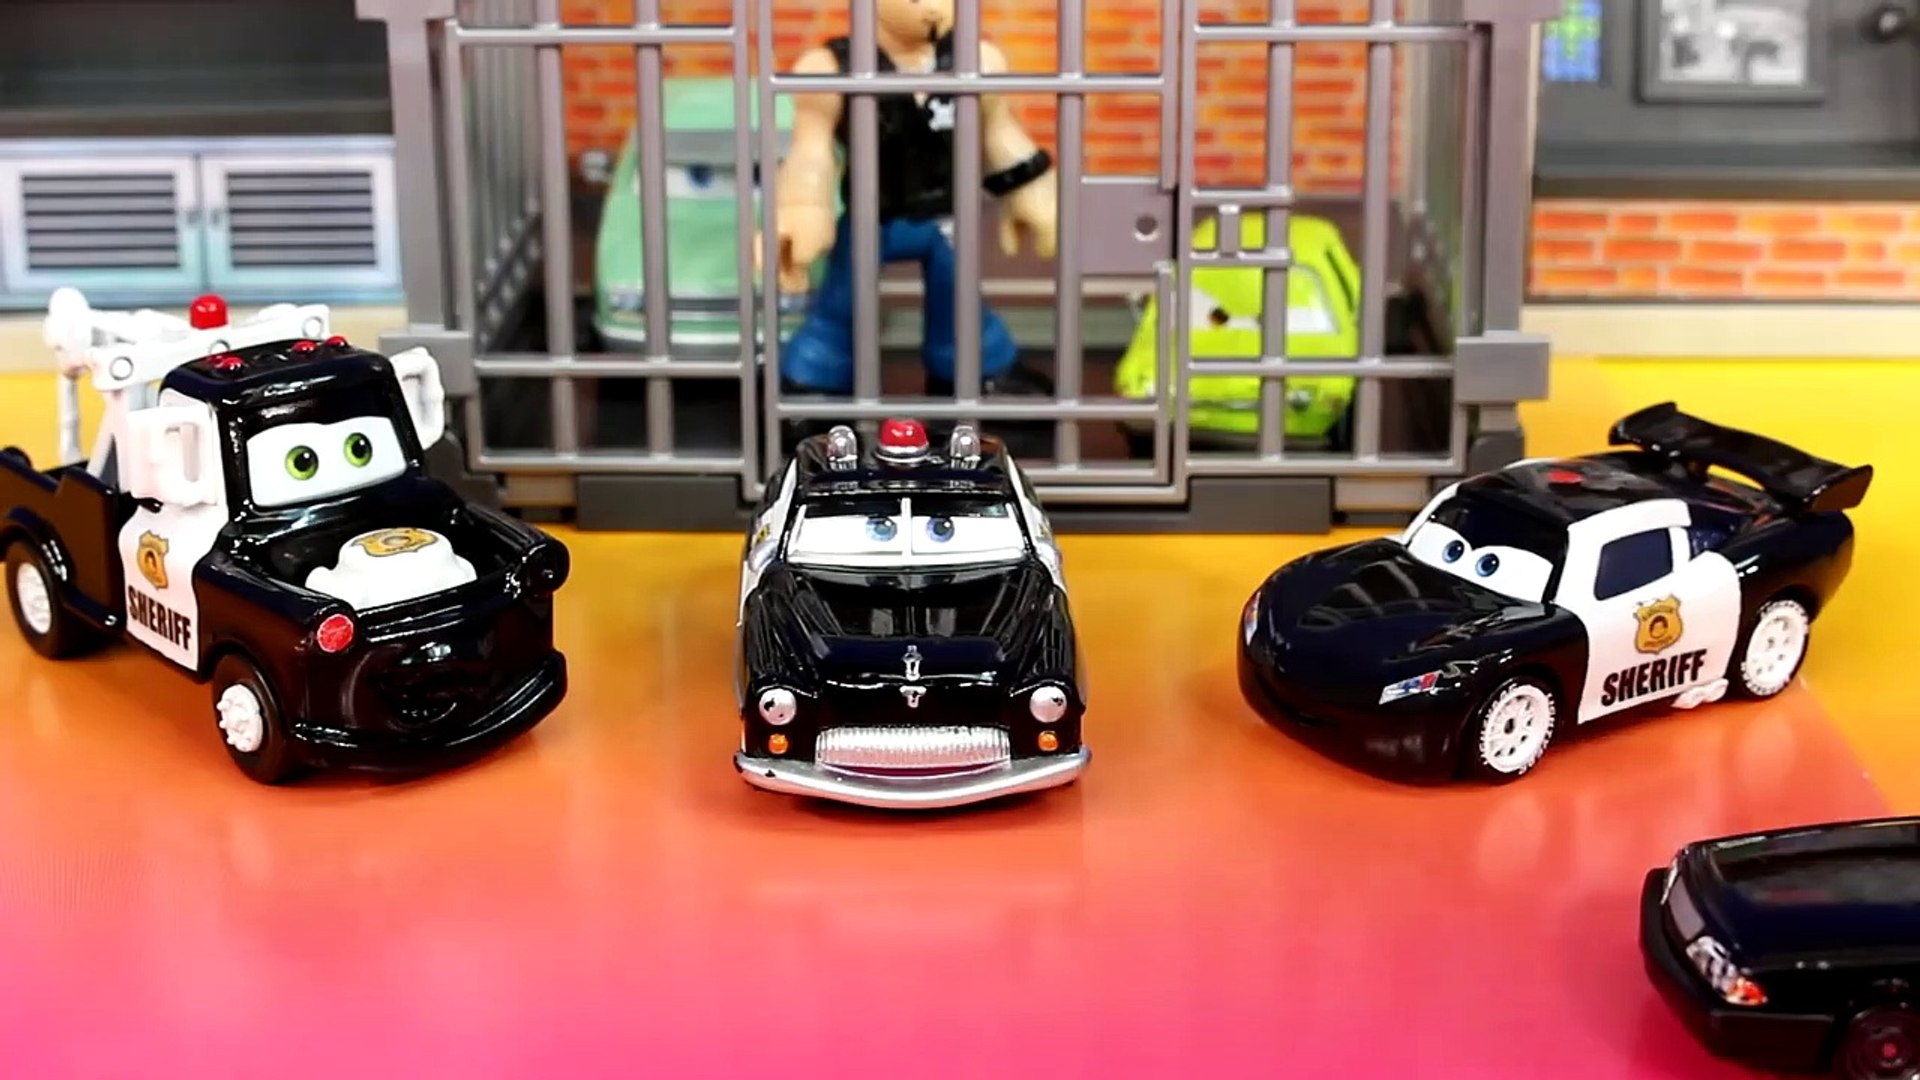 Disney / Pixar Cars Cars 3 Sheriff, Mater & Lightning McQueen